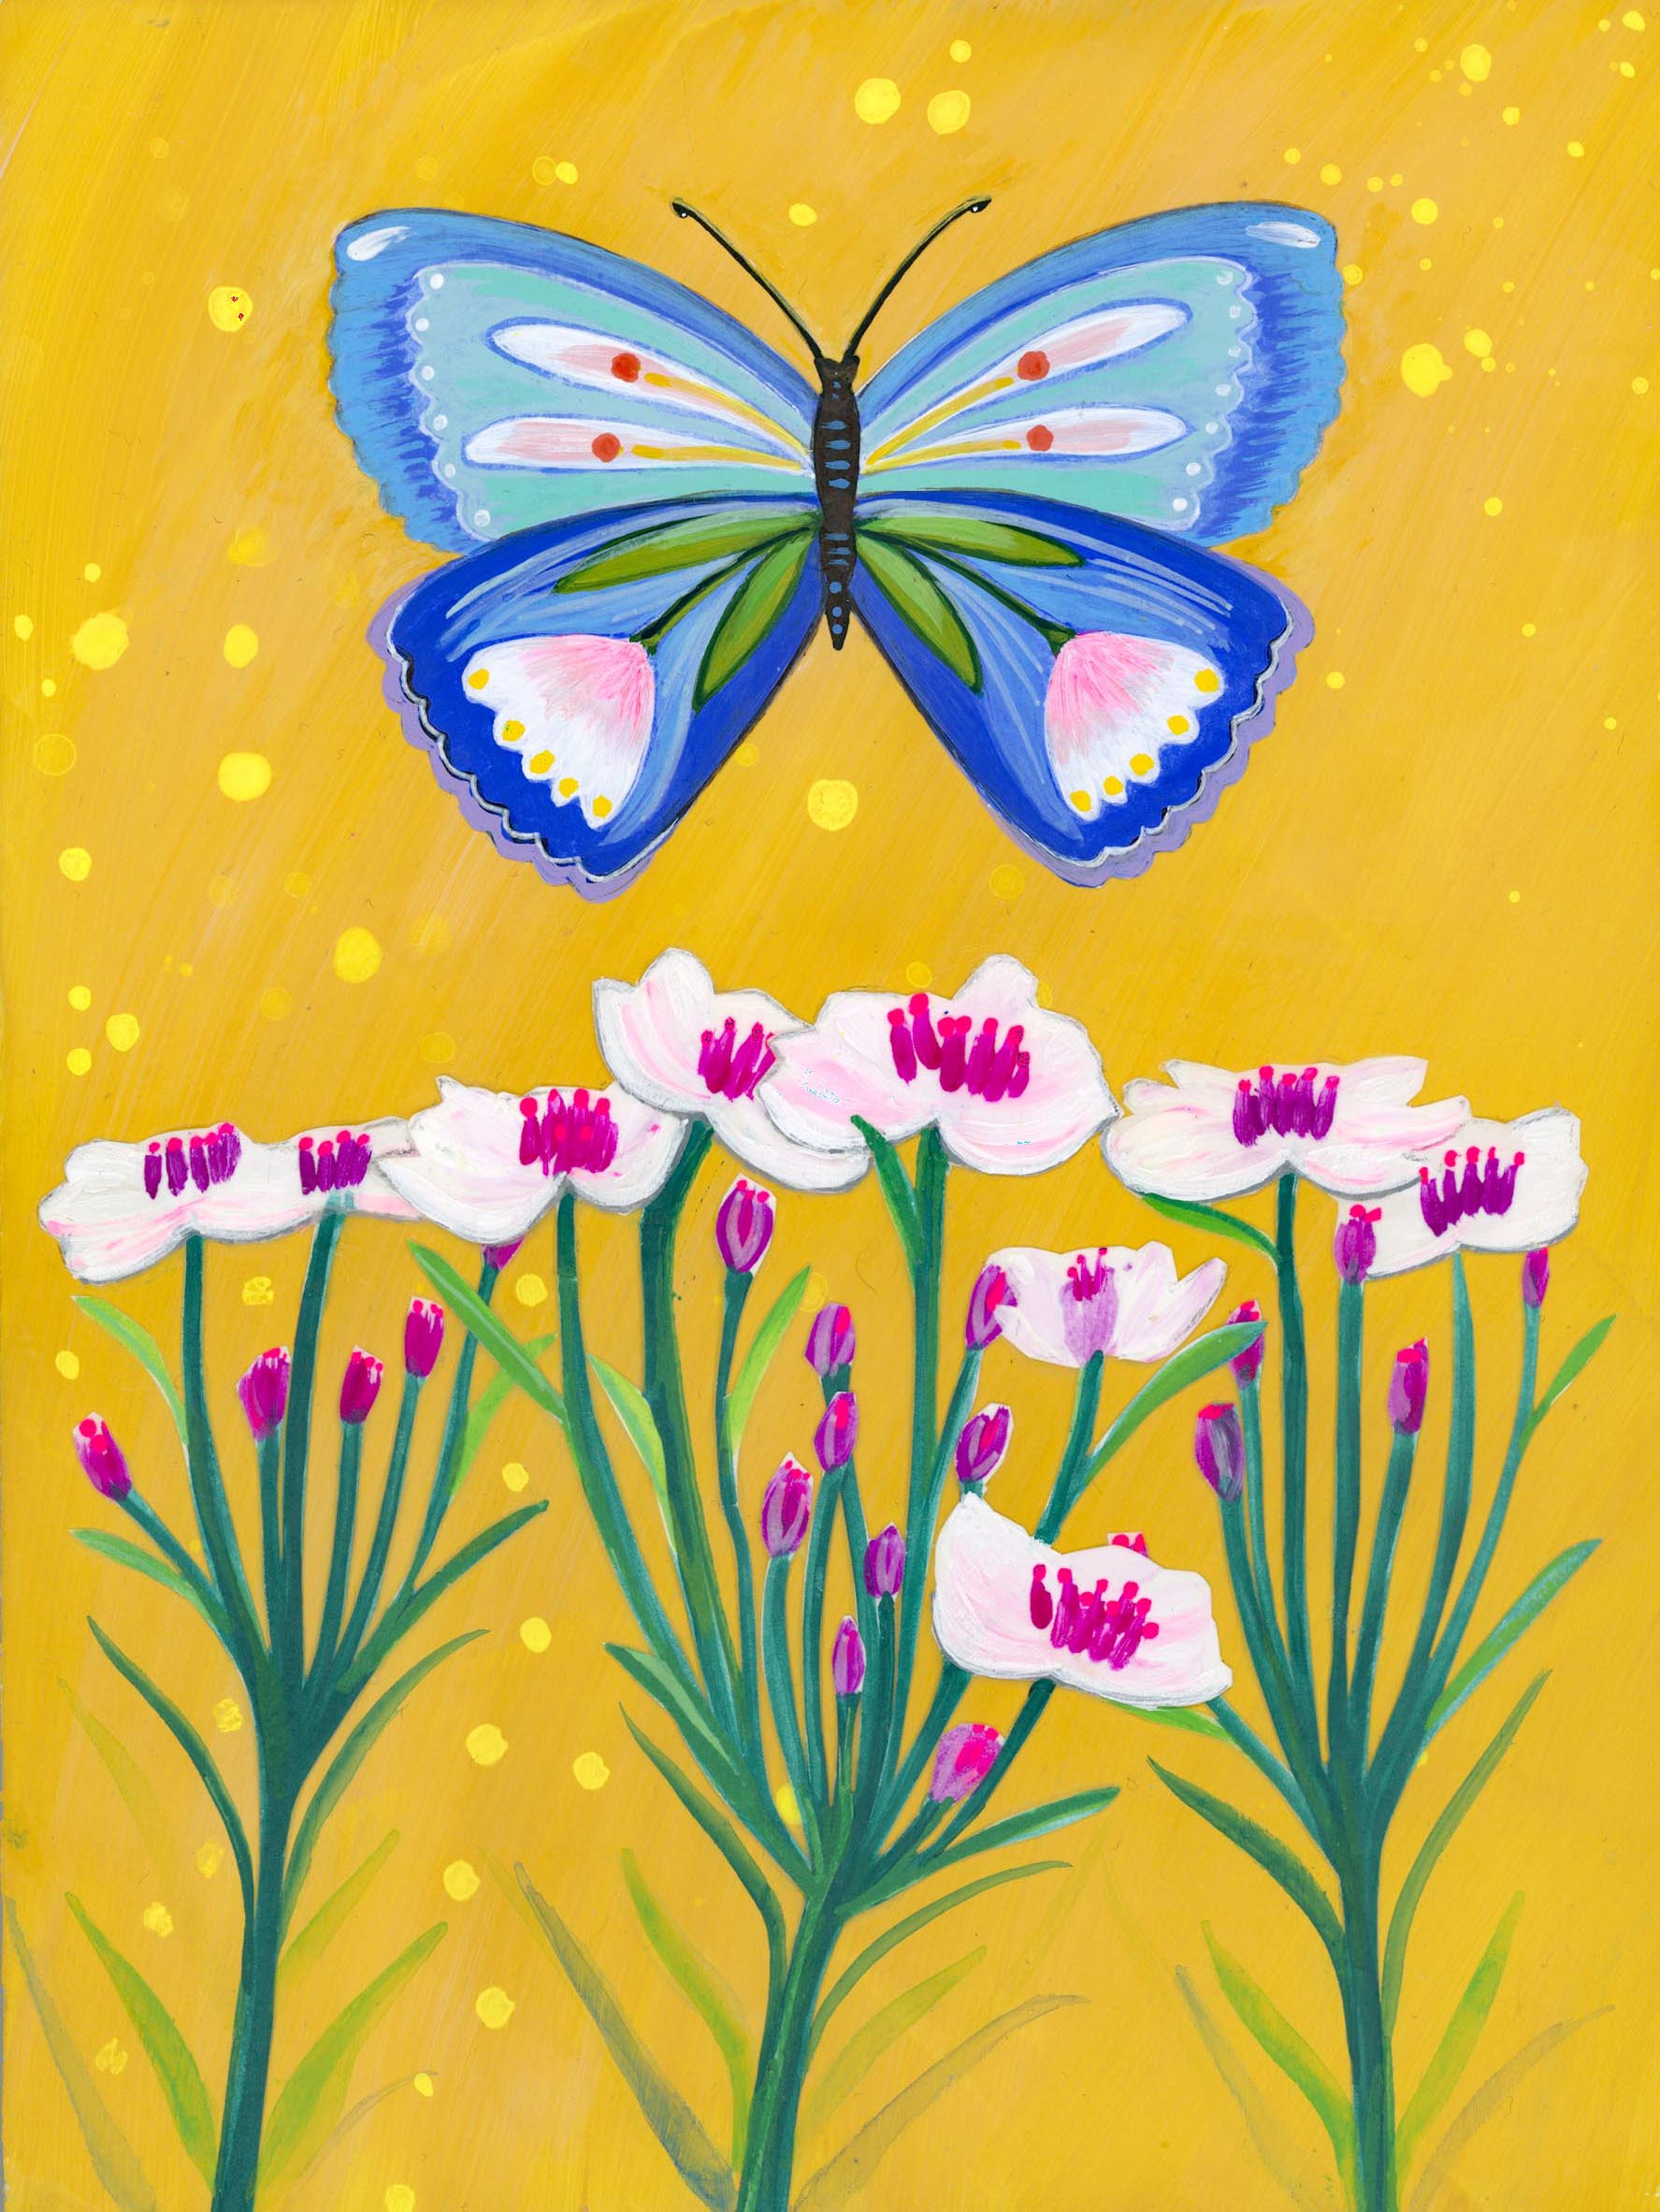 Butterfly Garden Golden Sky (6x8) Original Mixed Media Painting